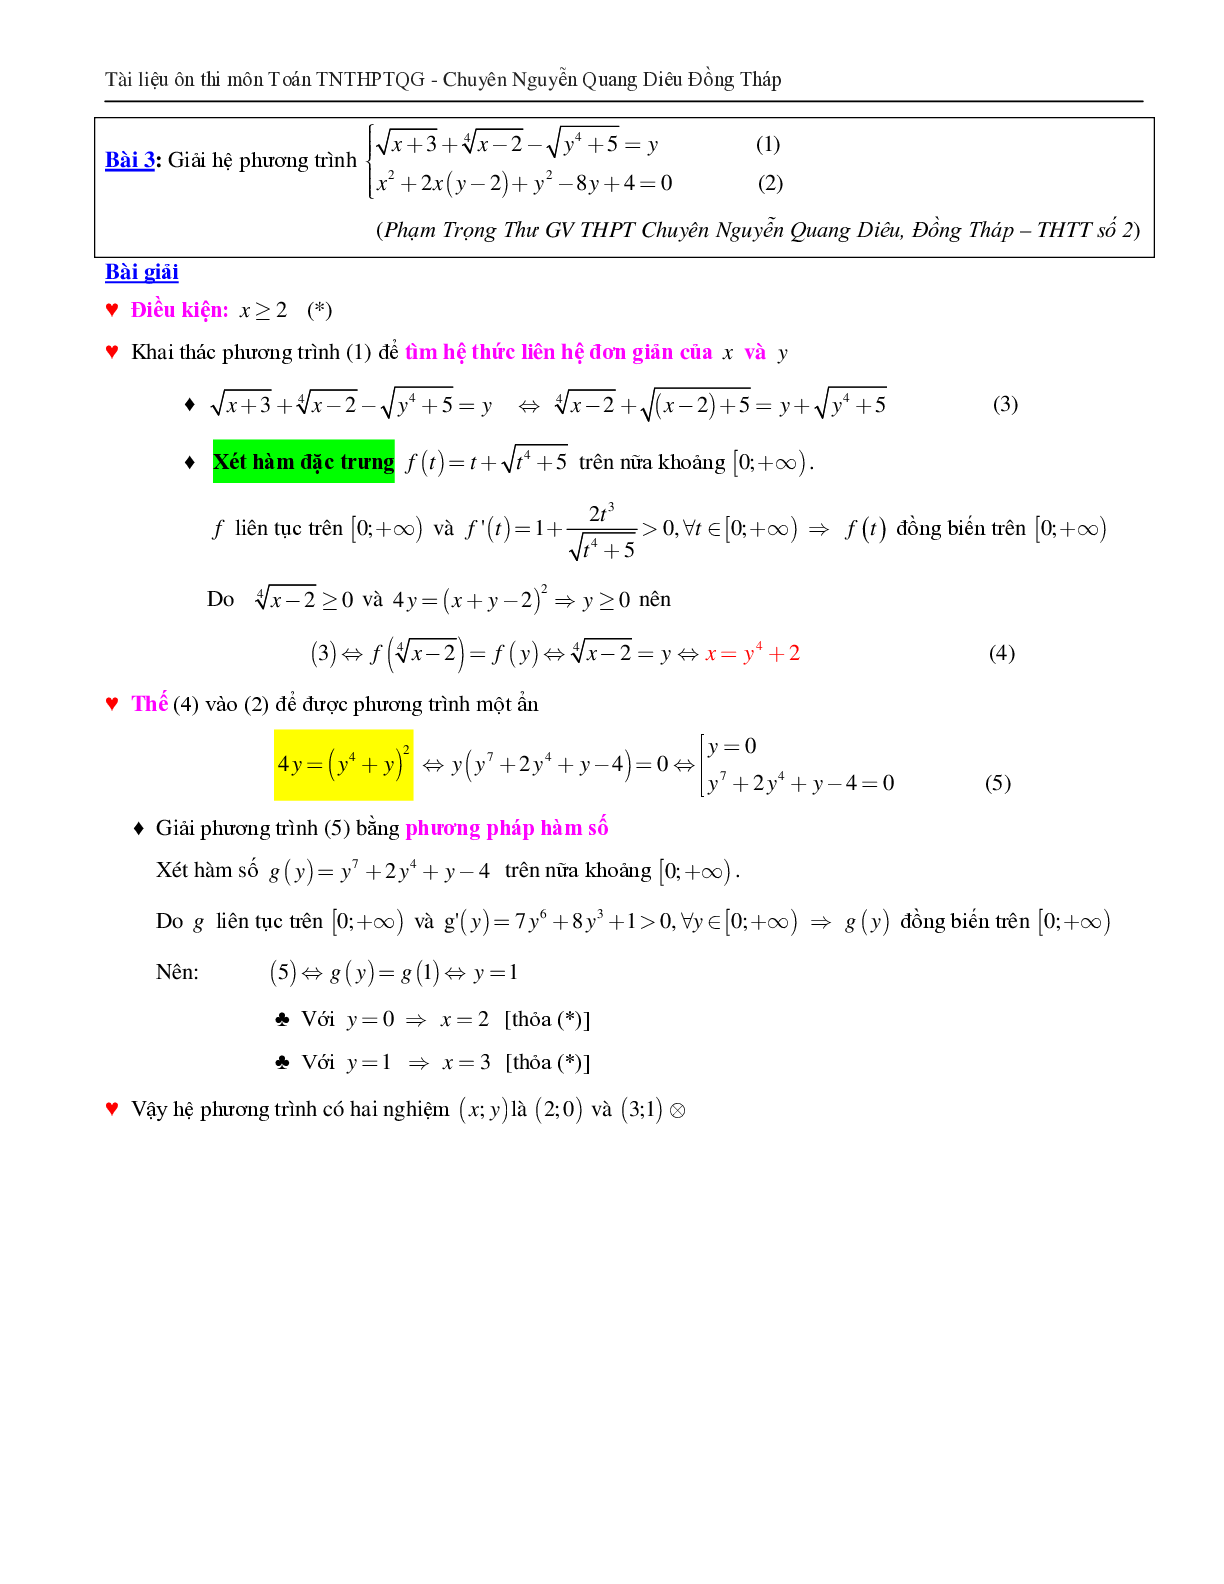 Giải hệ phương trình bằng phương pháp hàm số (trang 4)